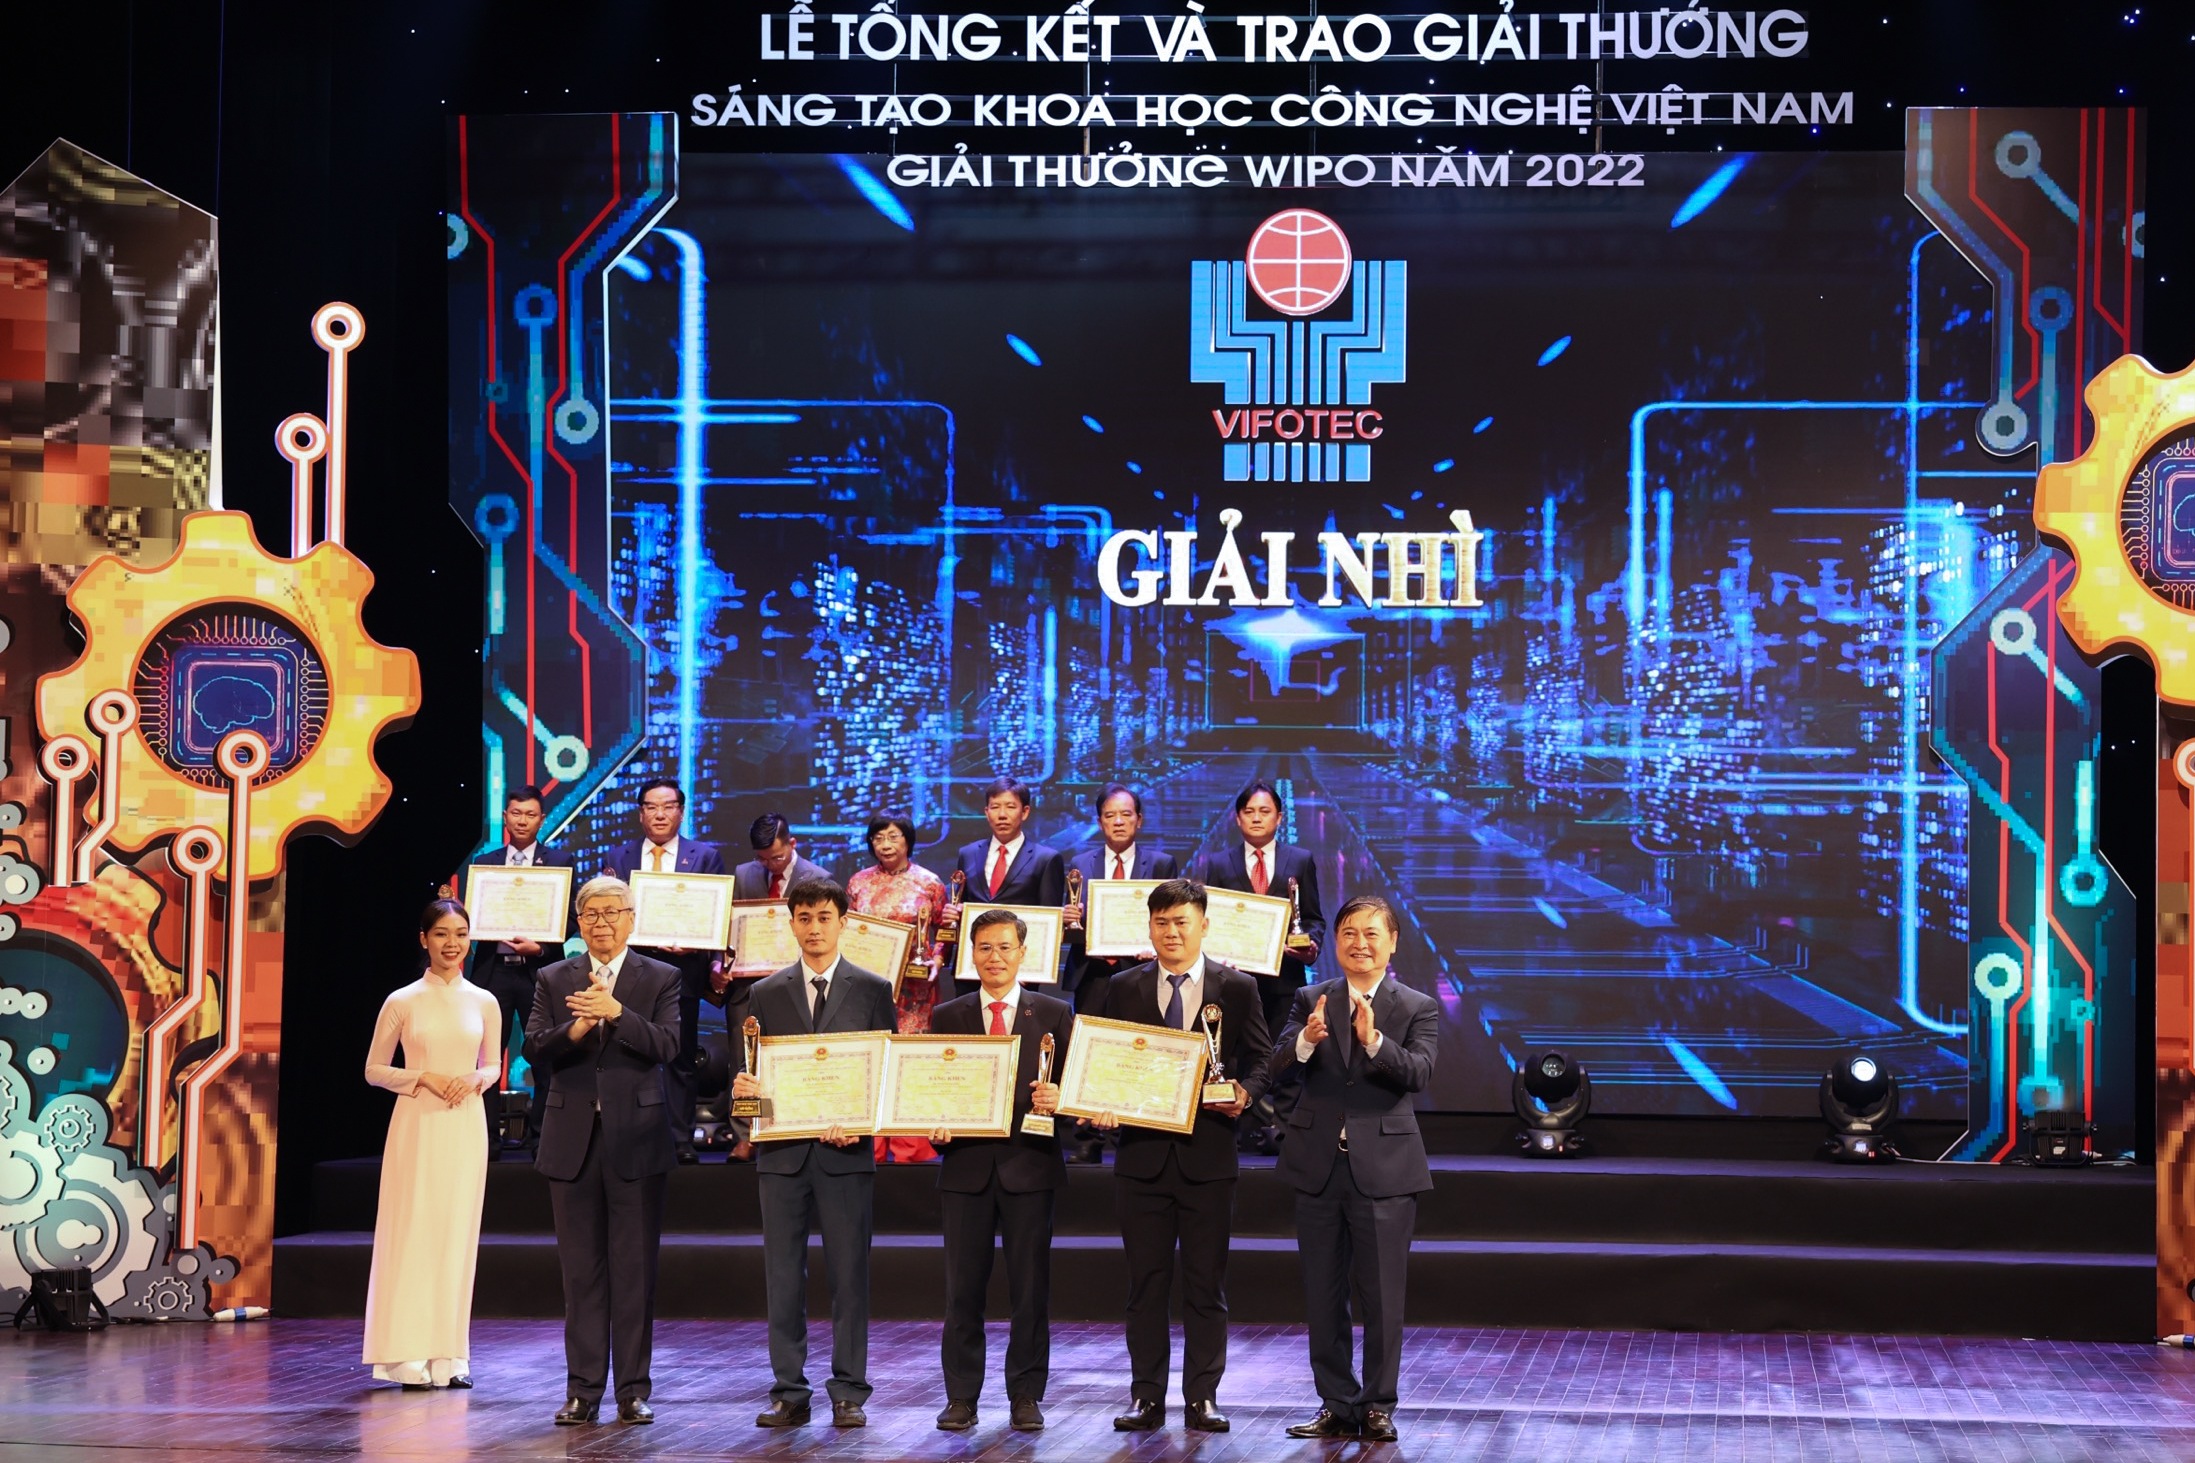 EVNCPC nhận 4 giải thưởng “Sáng tạo khoa học công nghệ Việt Nam”